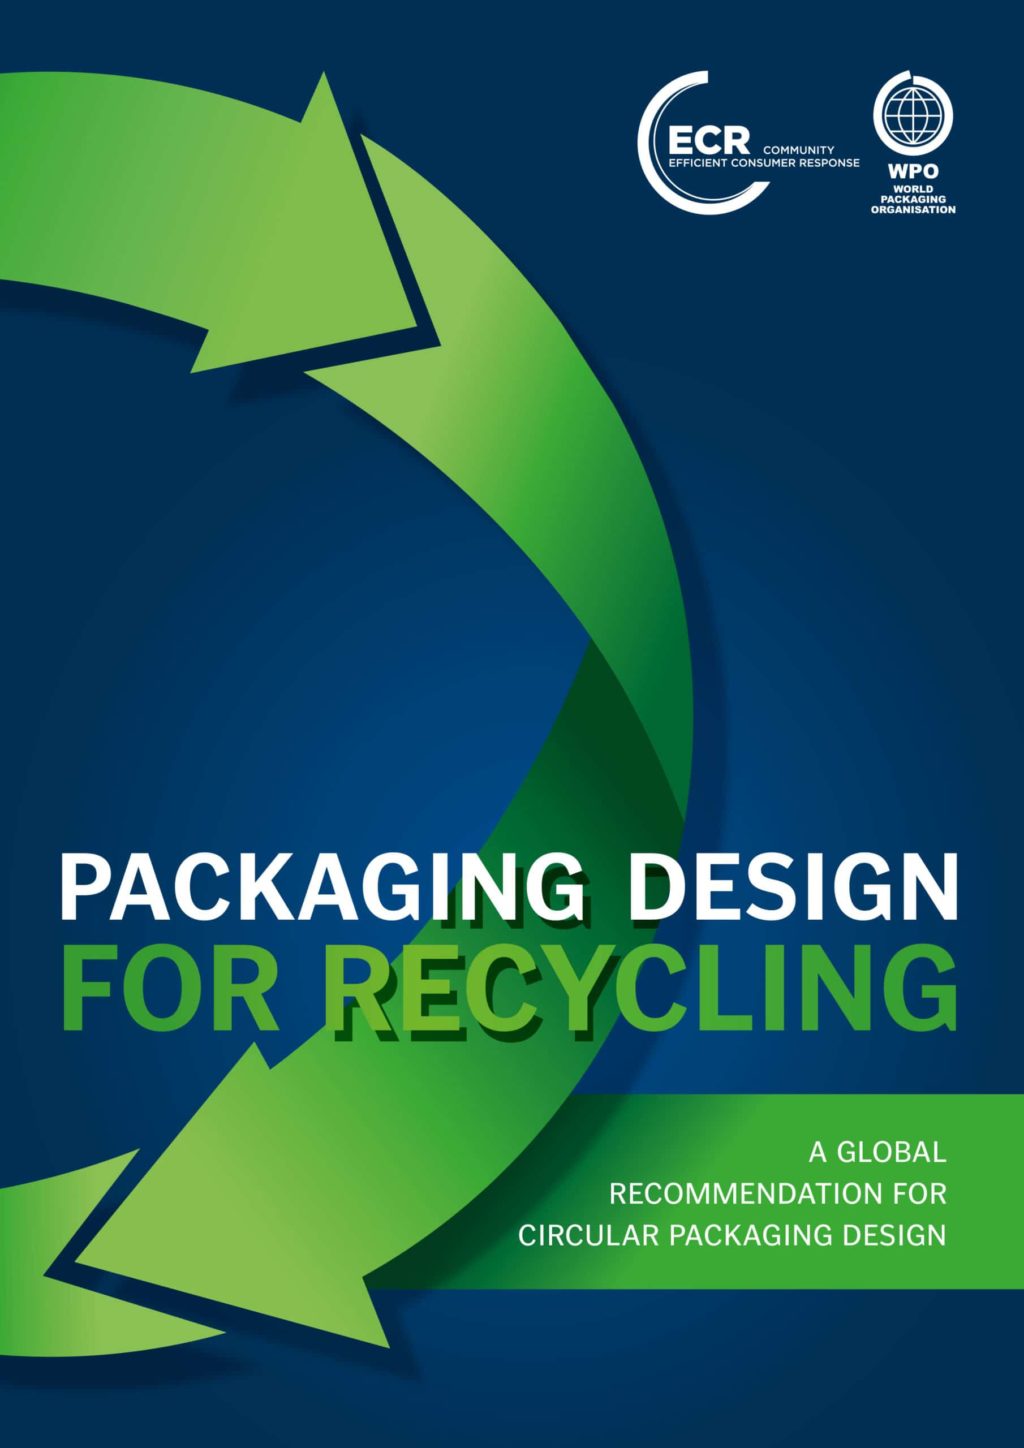 ECR und WPO veröffentlichen Verpackungsdesign-Leitfaden für das Recycling